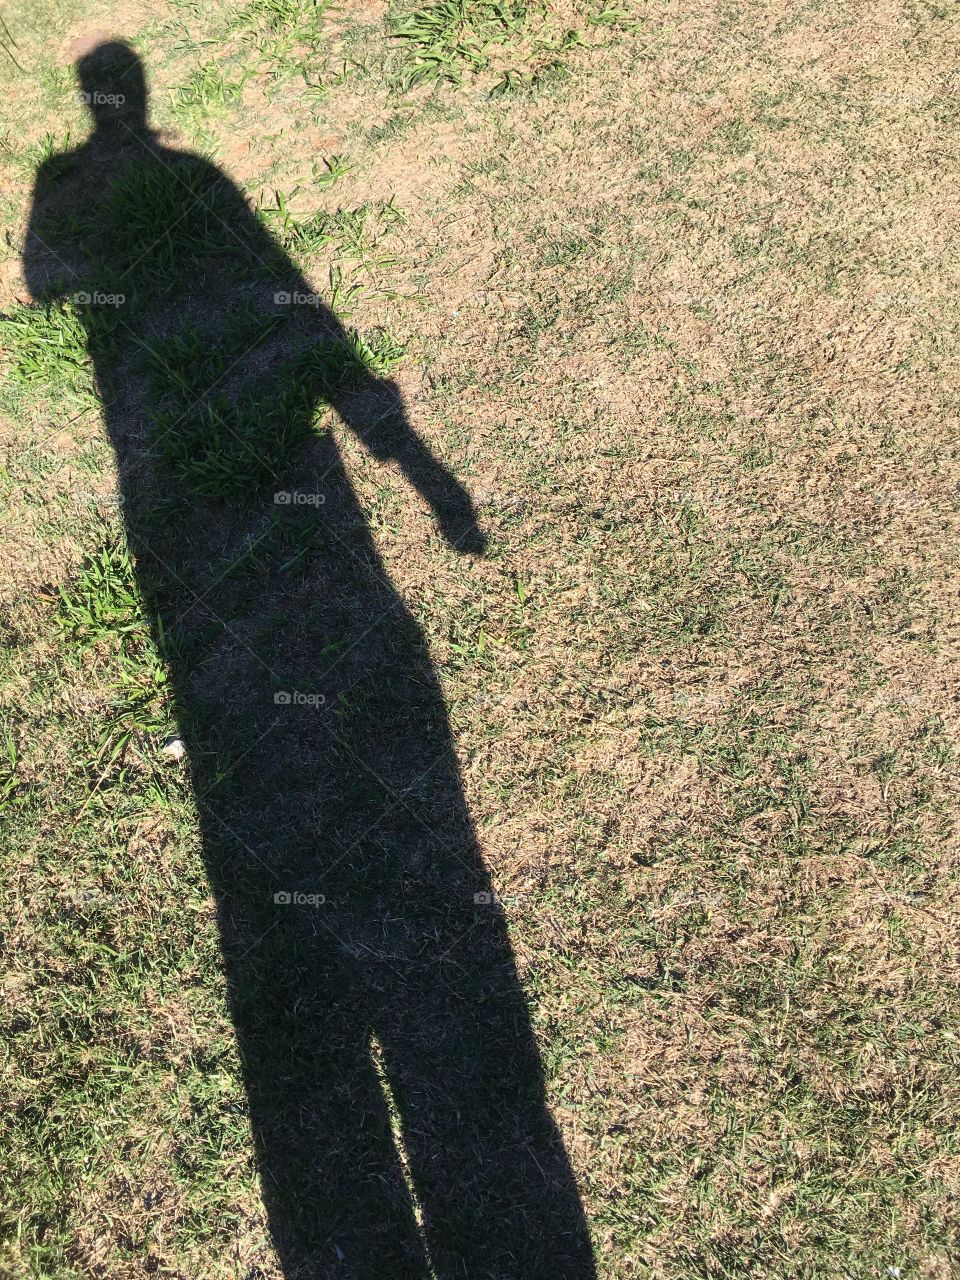 E vou pendendo pela grama. Pra lá... pra cá. Minha sombra mostra que pelo menos eu emagreci um pouco!